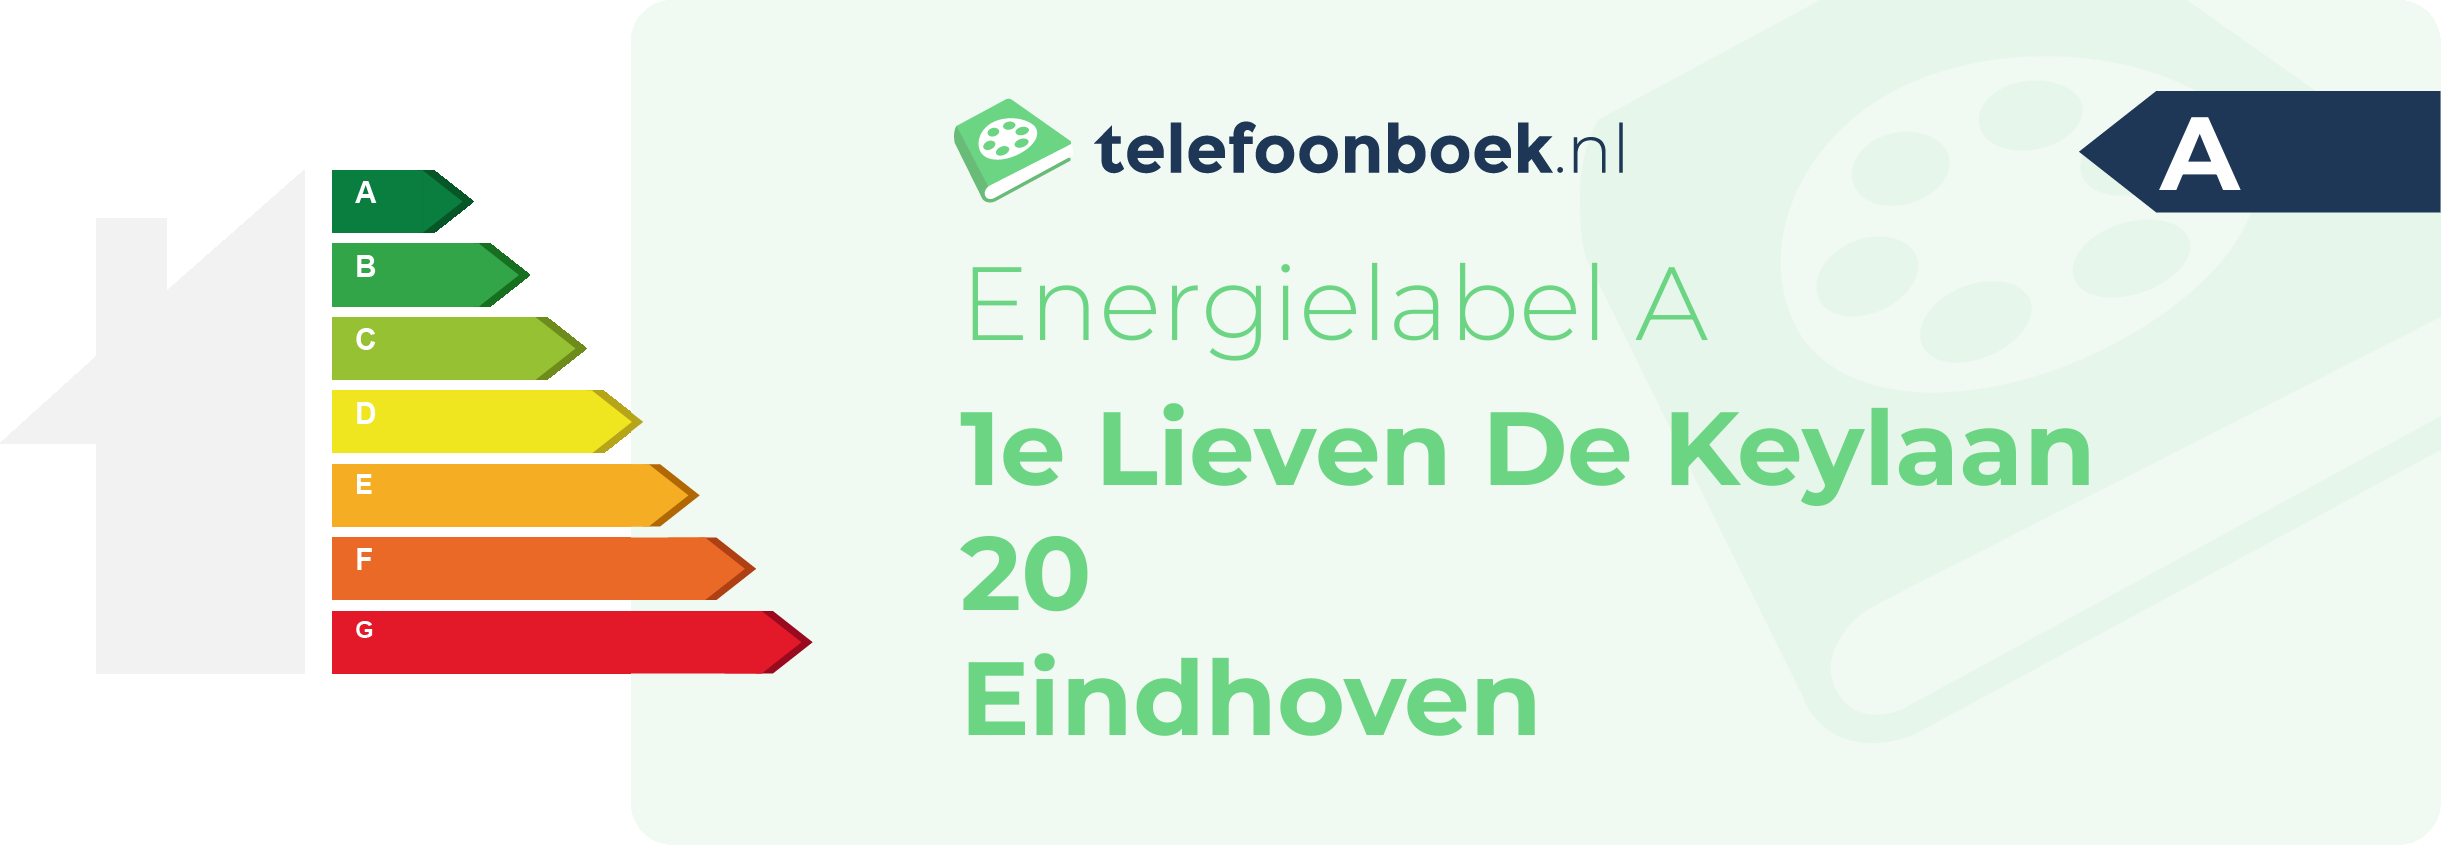 Energielabel 1e Lieven De Keylaan 20 Eindhoven